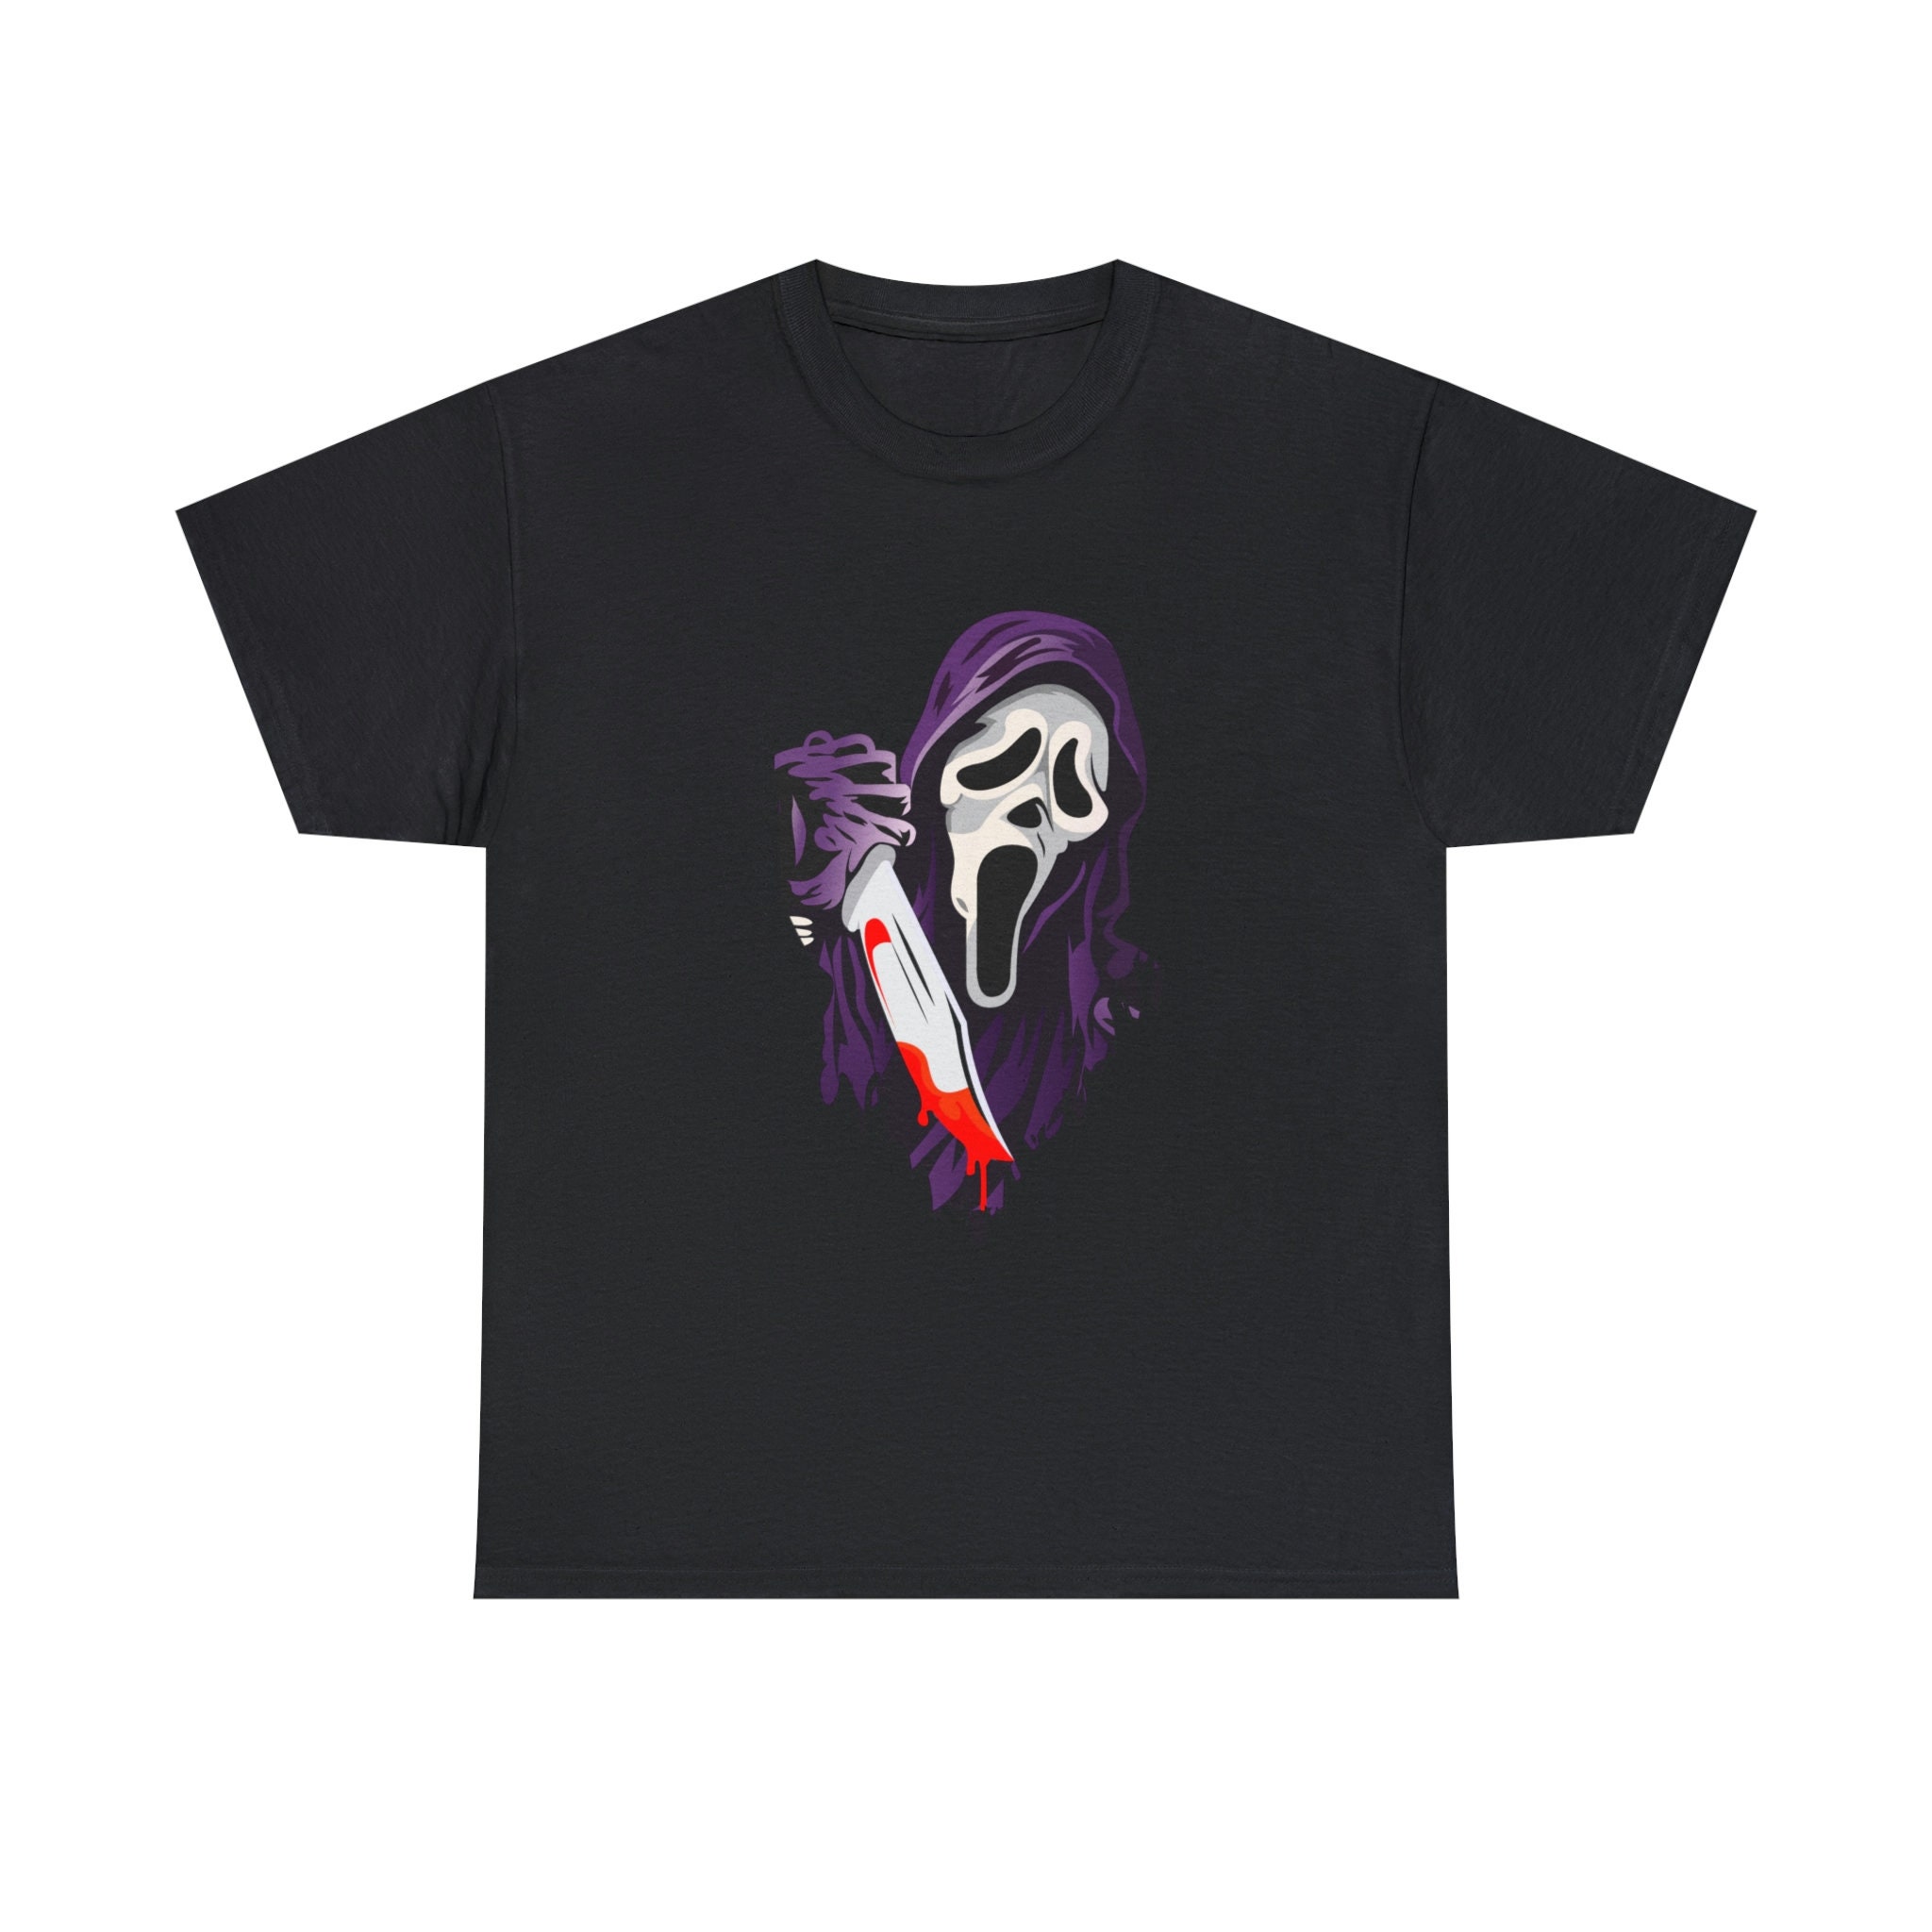 Discover GOST-FACE SHIRT, Scream Shirt, Halloween Scream, Retro Scream Halloween T Shirt, Scream Crewneck Movie T Shirt!